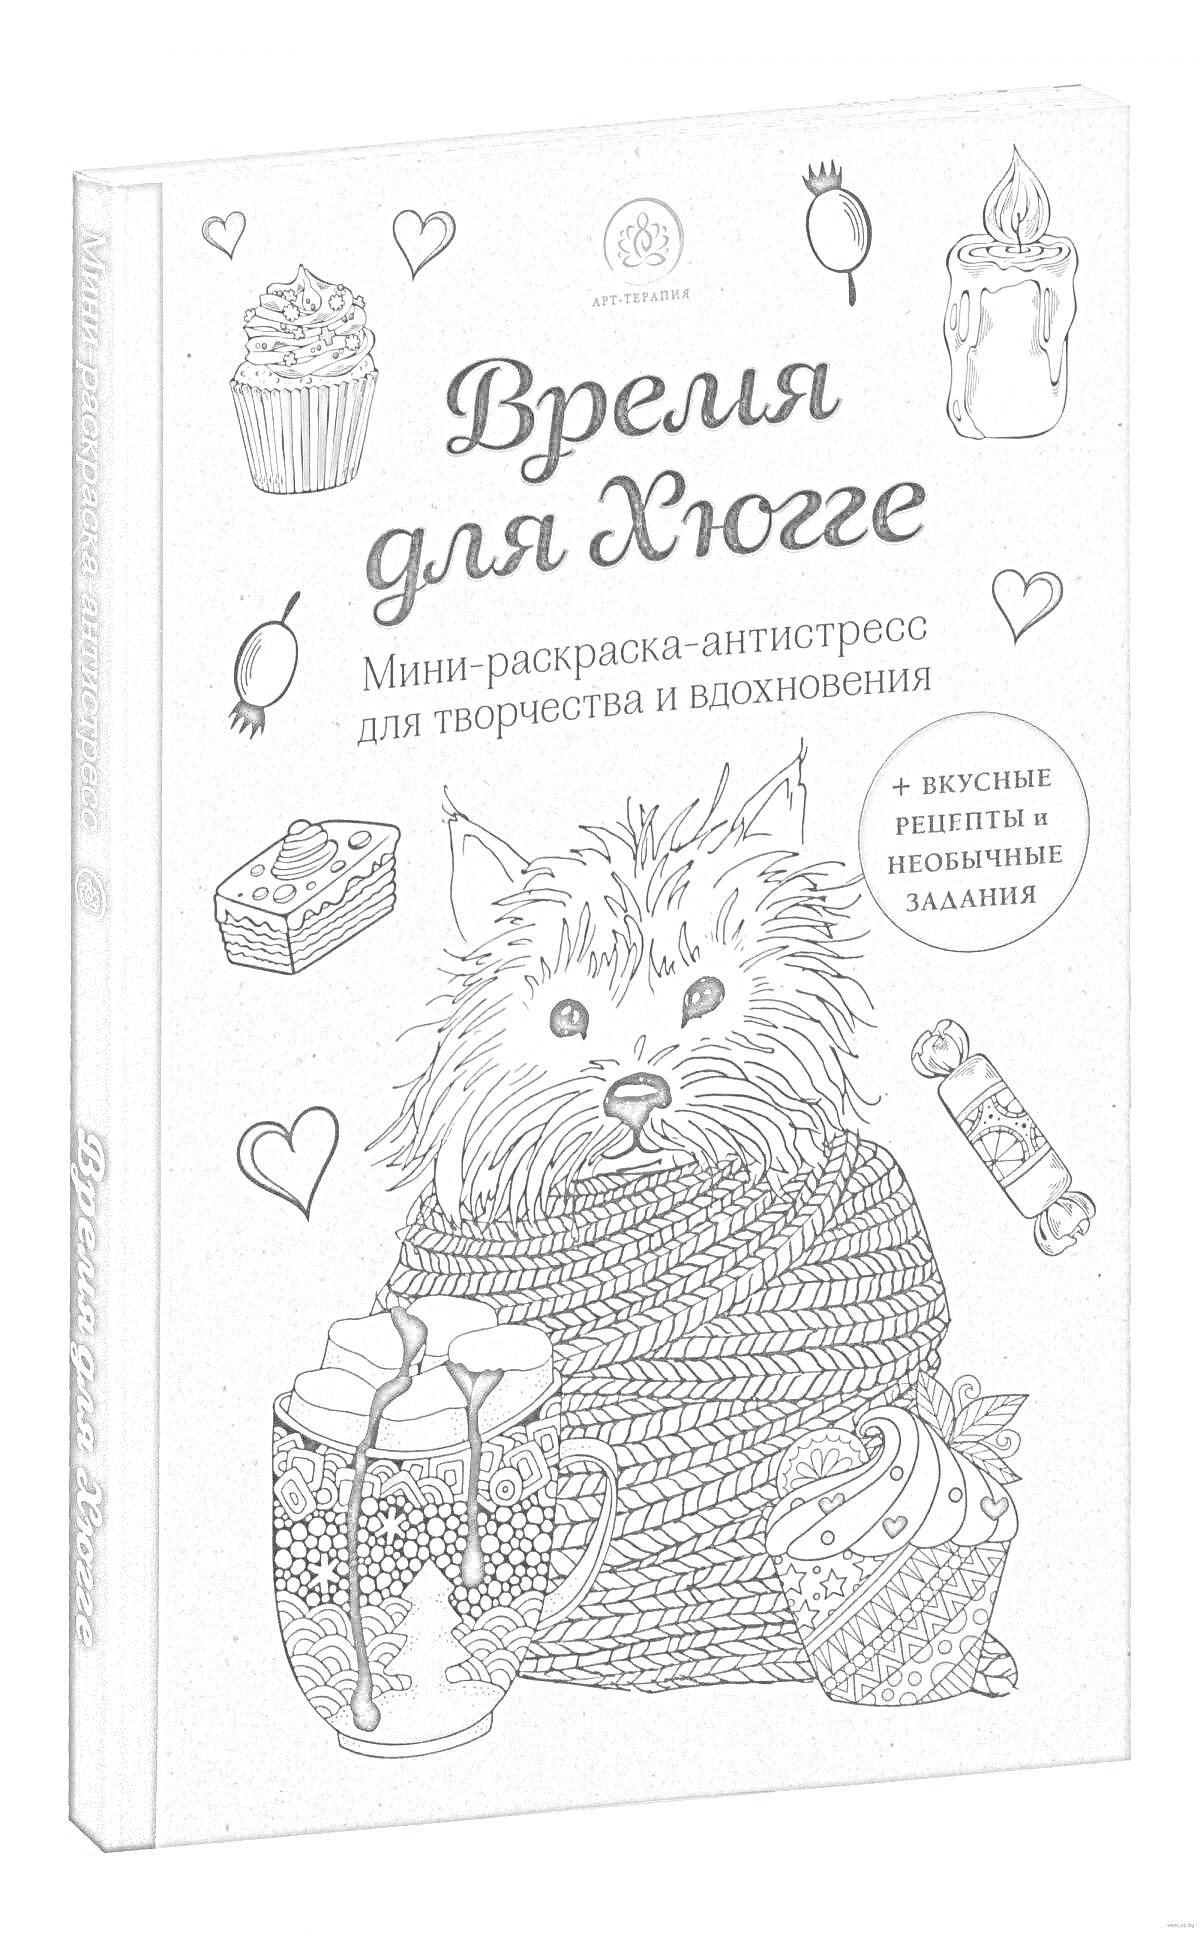 Раскраска Время для Хюгге. На обложке изображены собака, клубок ниток, кружка с напитком, сердце, пирожное, шоколадка, свеча и книга